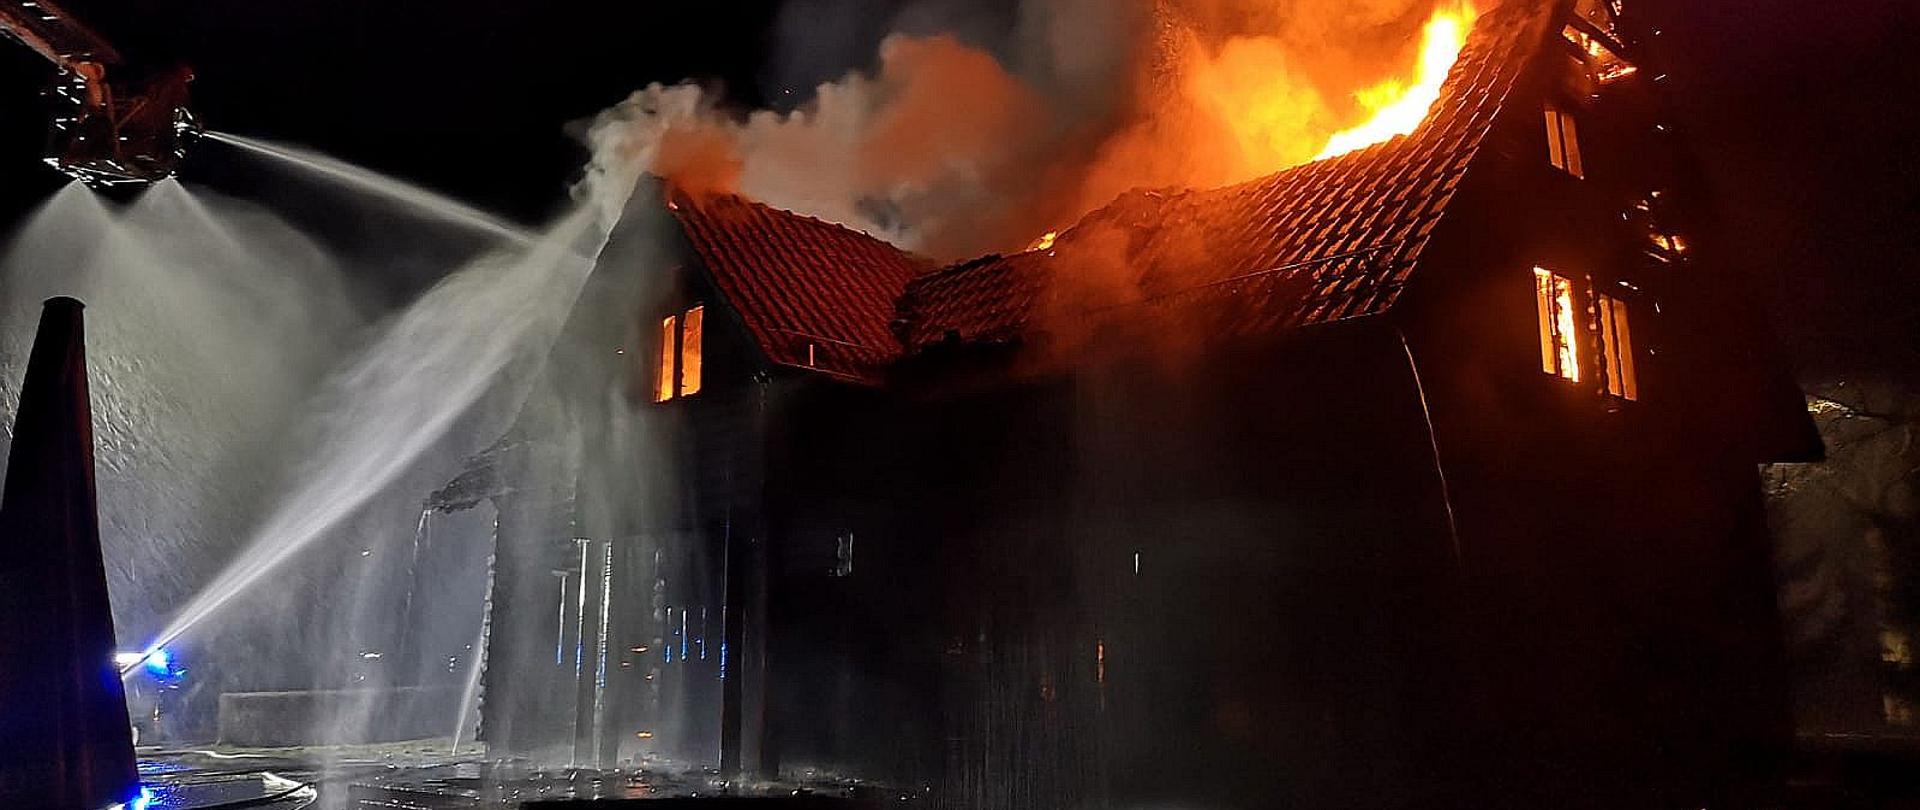 Płonący drewniany budynek widziany od frontu. Z dachy i z okien wydostają się płomienie. Z lewej strony widoczny kosz podnośnika hydraulicznego z którego strażacy podają wodę na płonący dach budynku.